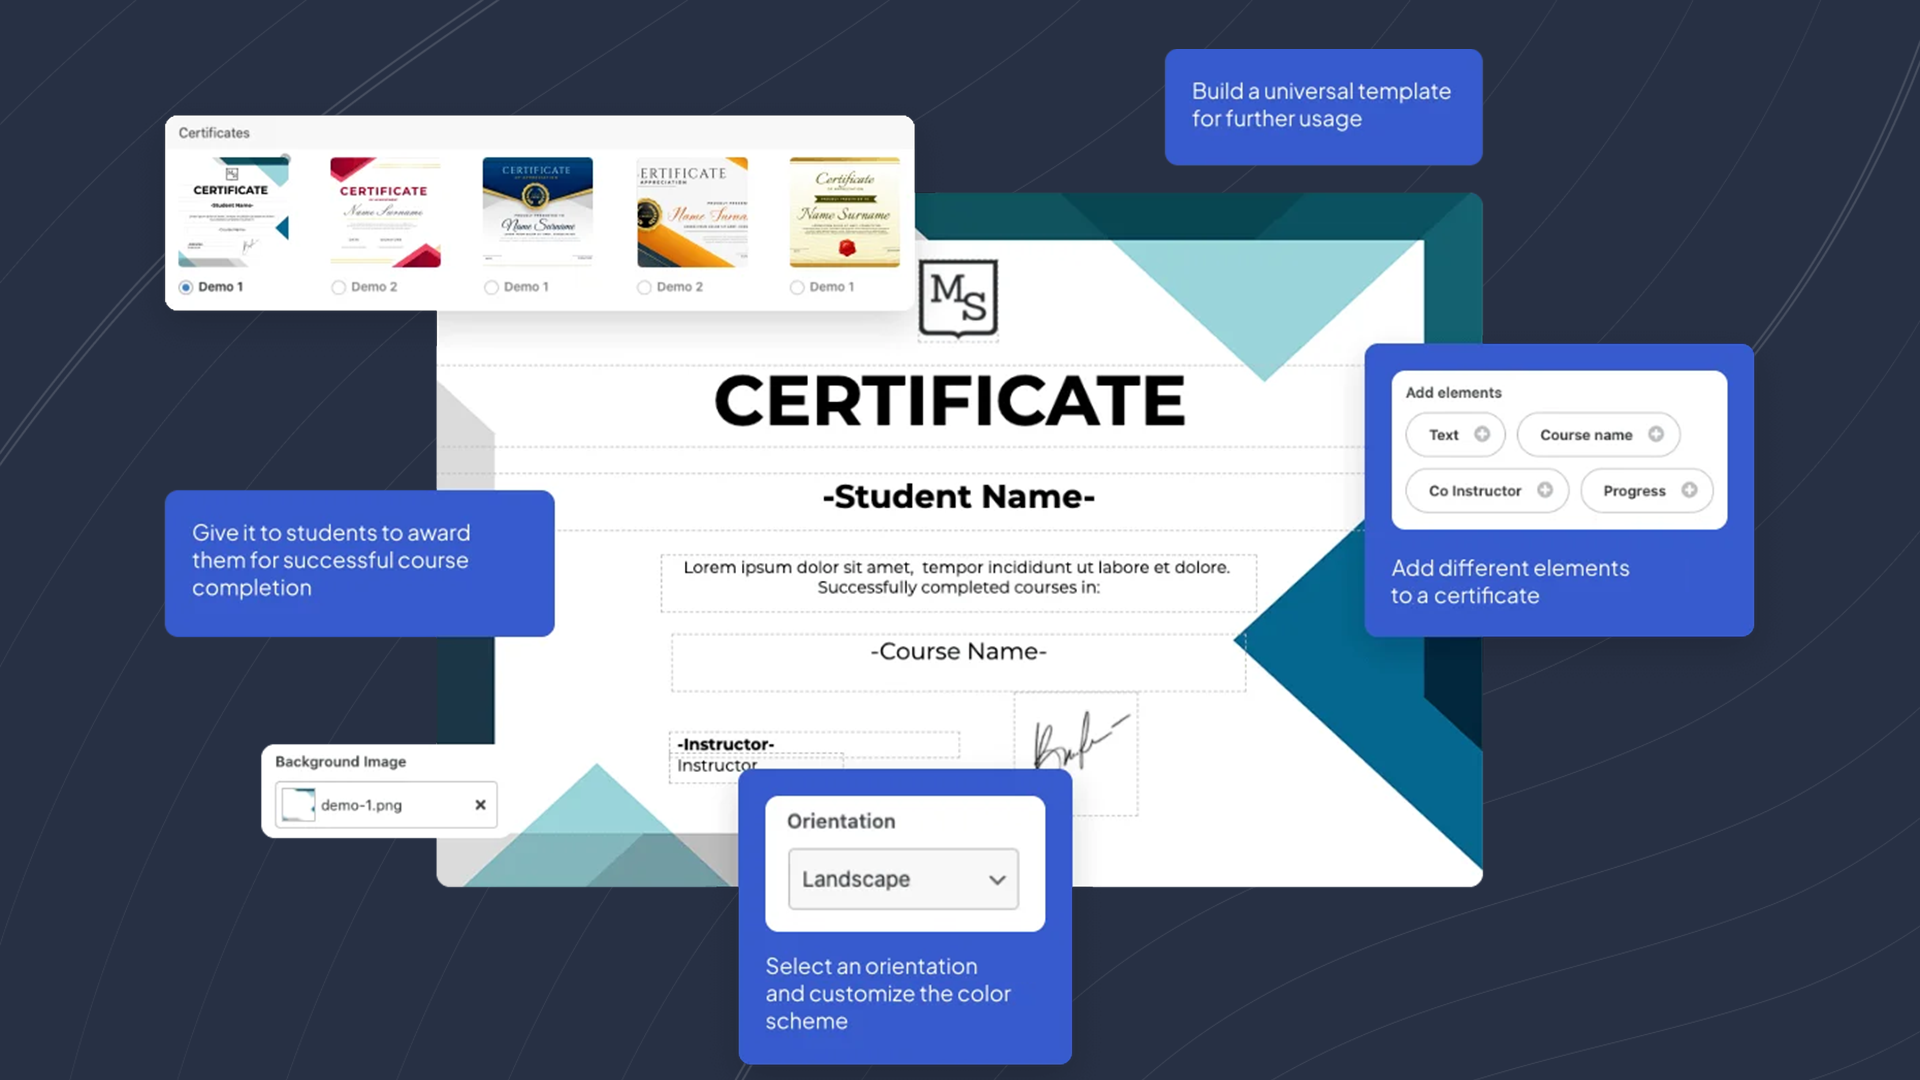 Certificate Builder